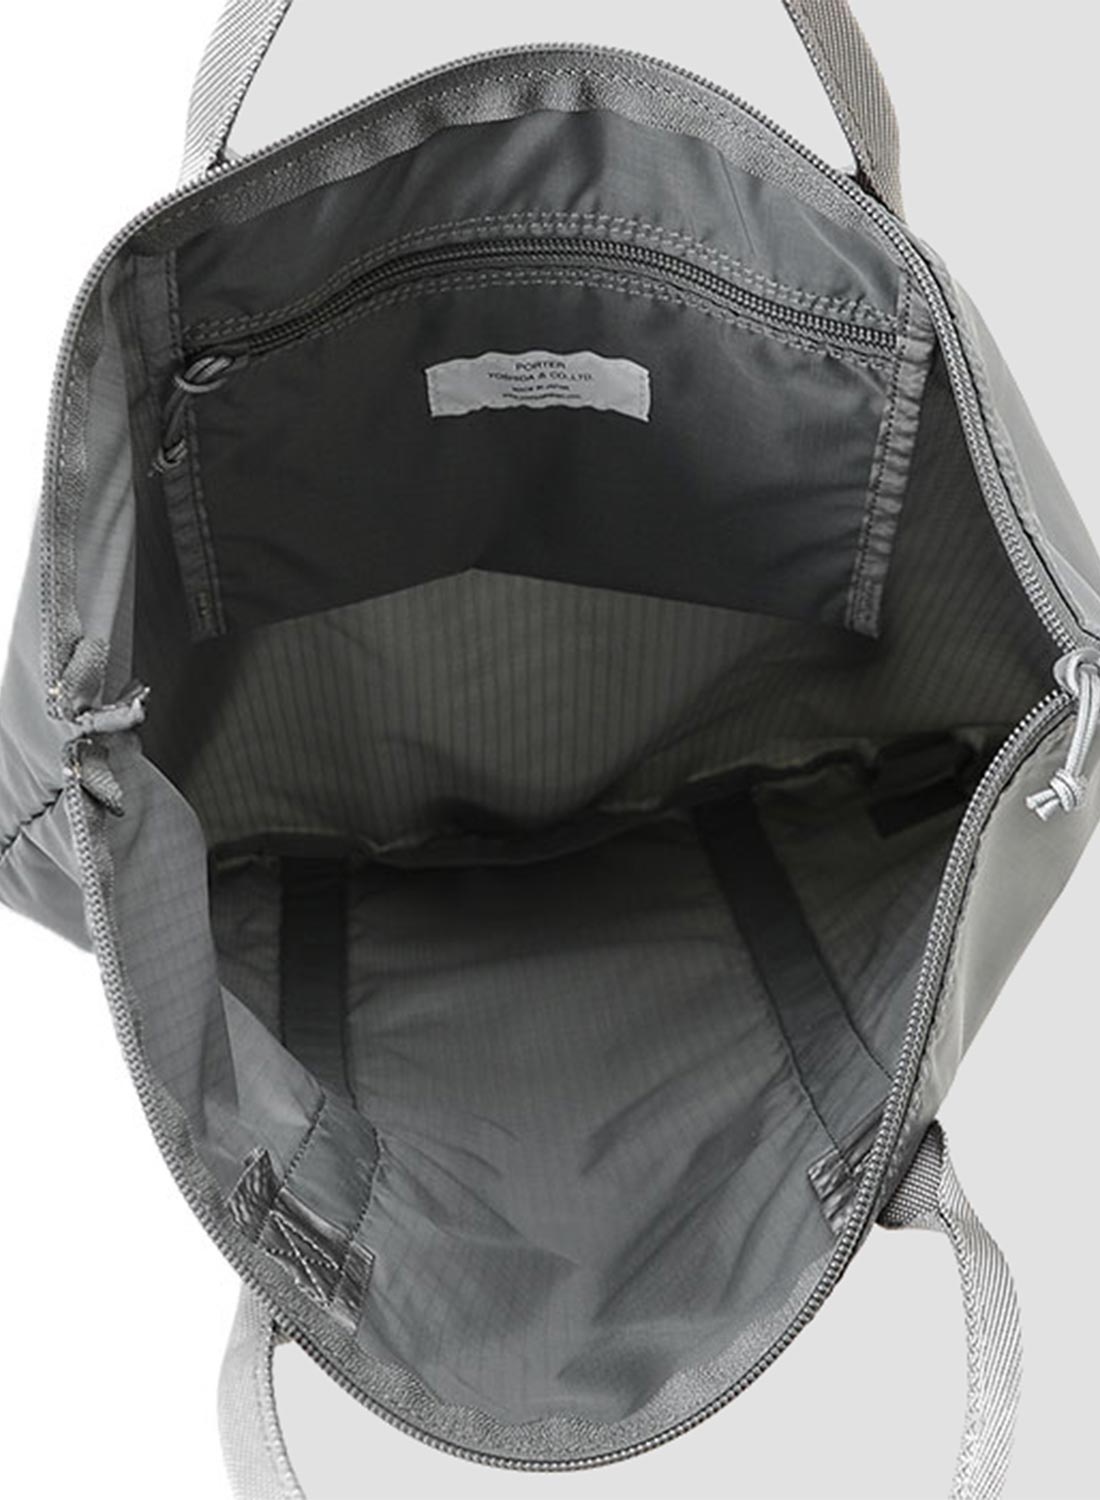 Porter-Yoshida & Co Flex 2-Way Tote Bag in Grey - 5